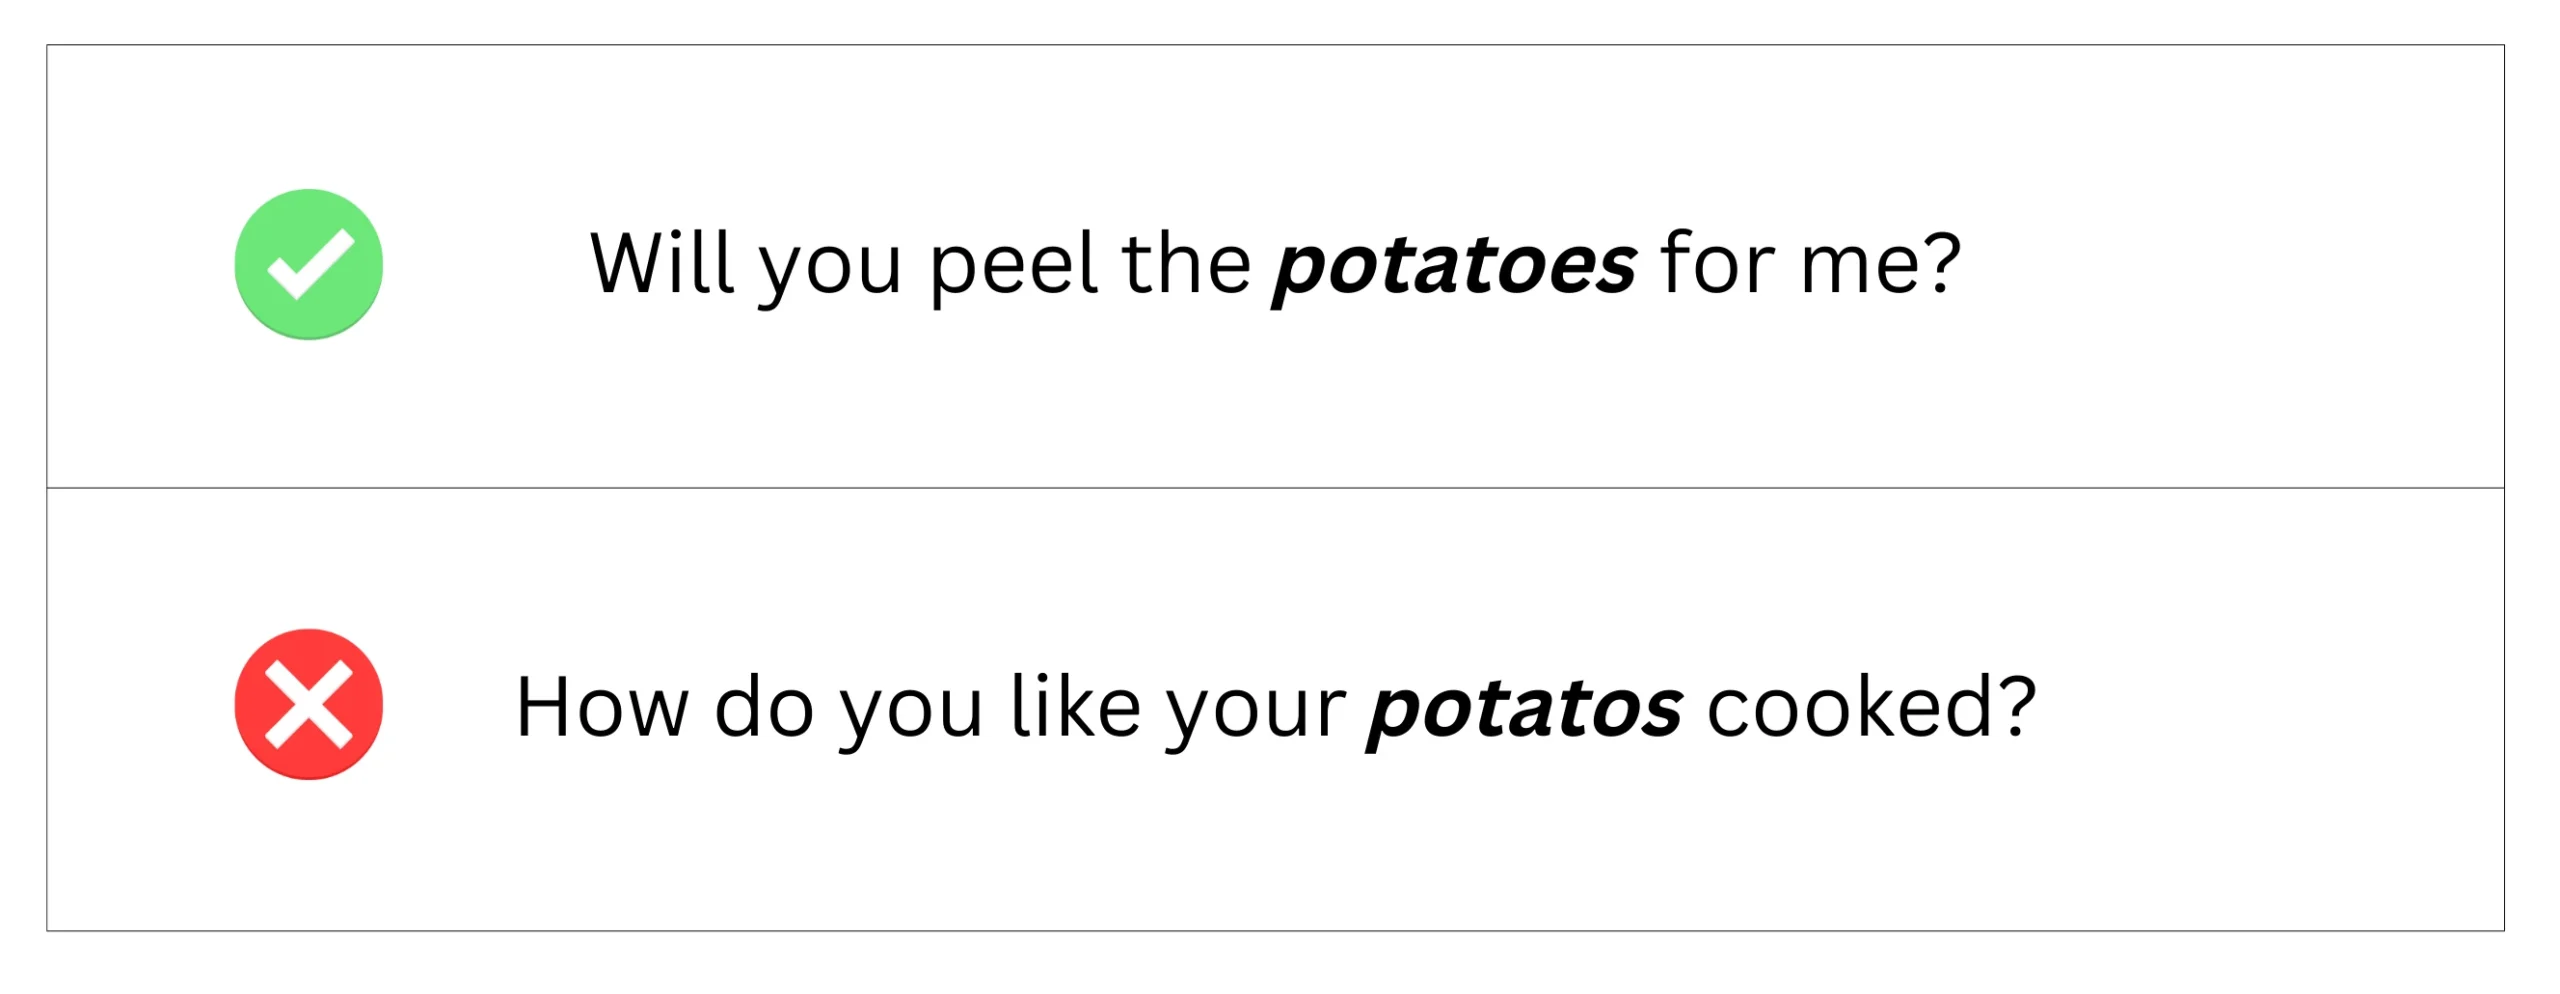 Potatoes (plural) in sentences.